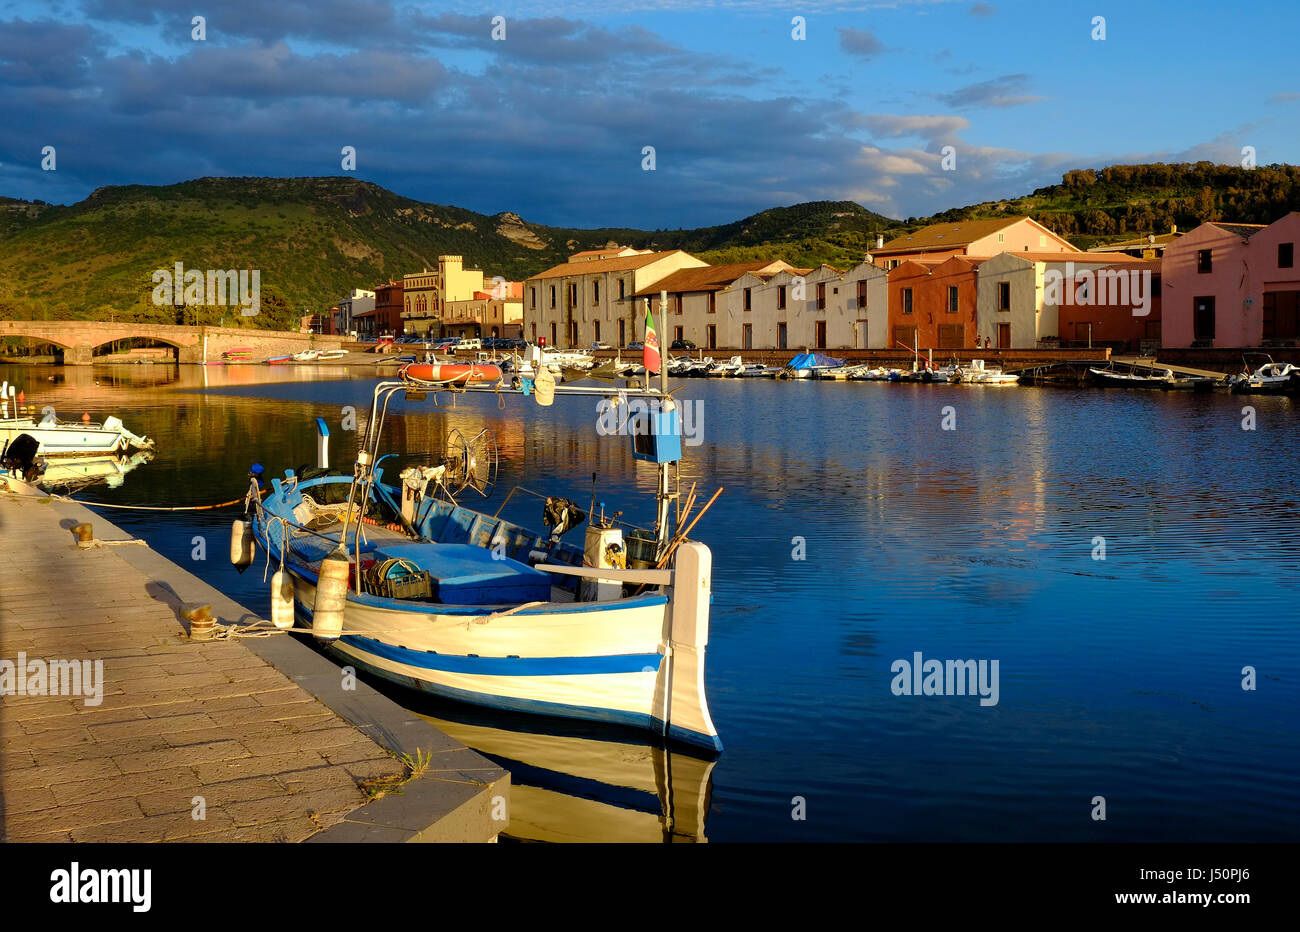 Barche da pesca sul fiume Temo, Bosa, Sardegna, Italia Foto Stock